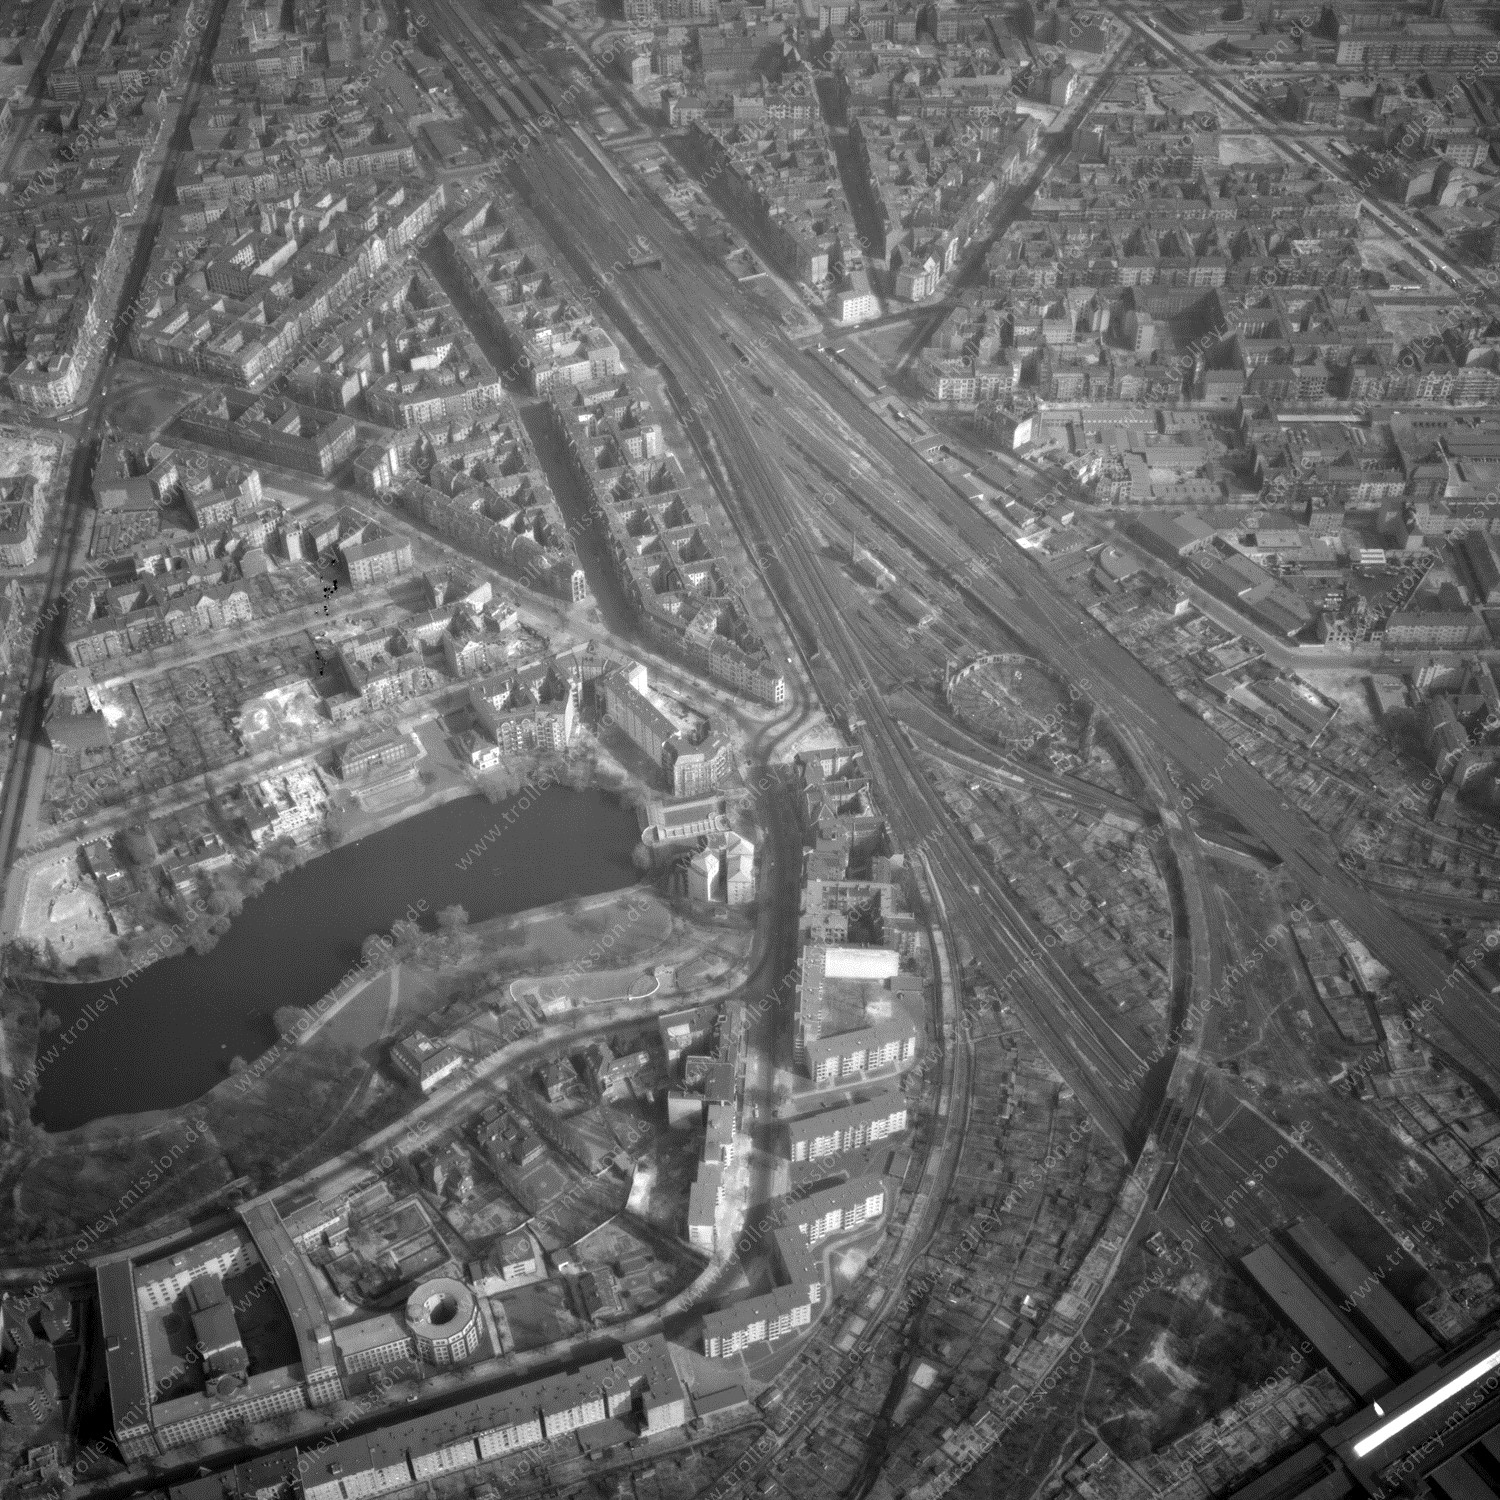 Alte Fotos und Luftbilder von Berlin - Luftbildaufnahme Nr. 13 - Historische Luftaufnahmen von West-Berlin aus dem Jahr 1954 - Flugstrecke Alpha